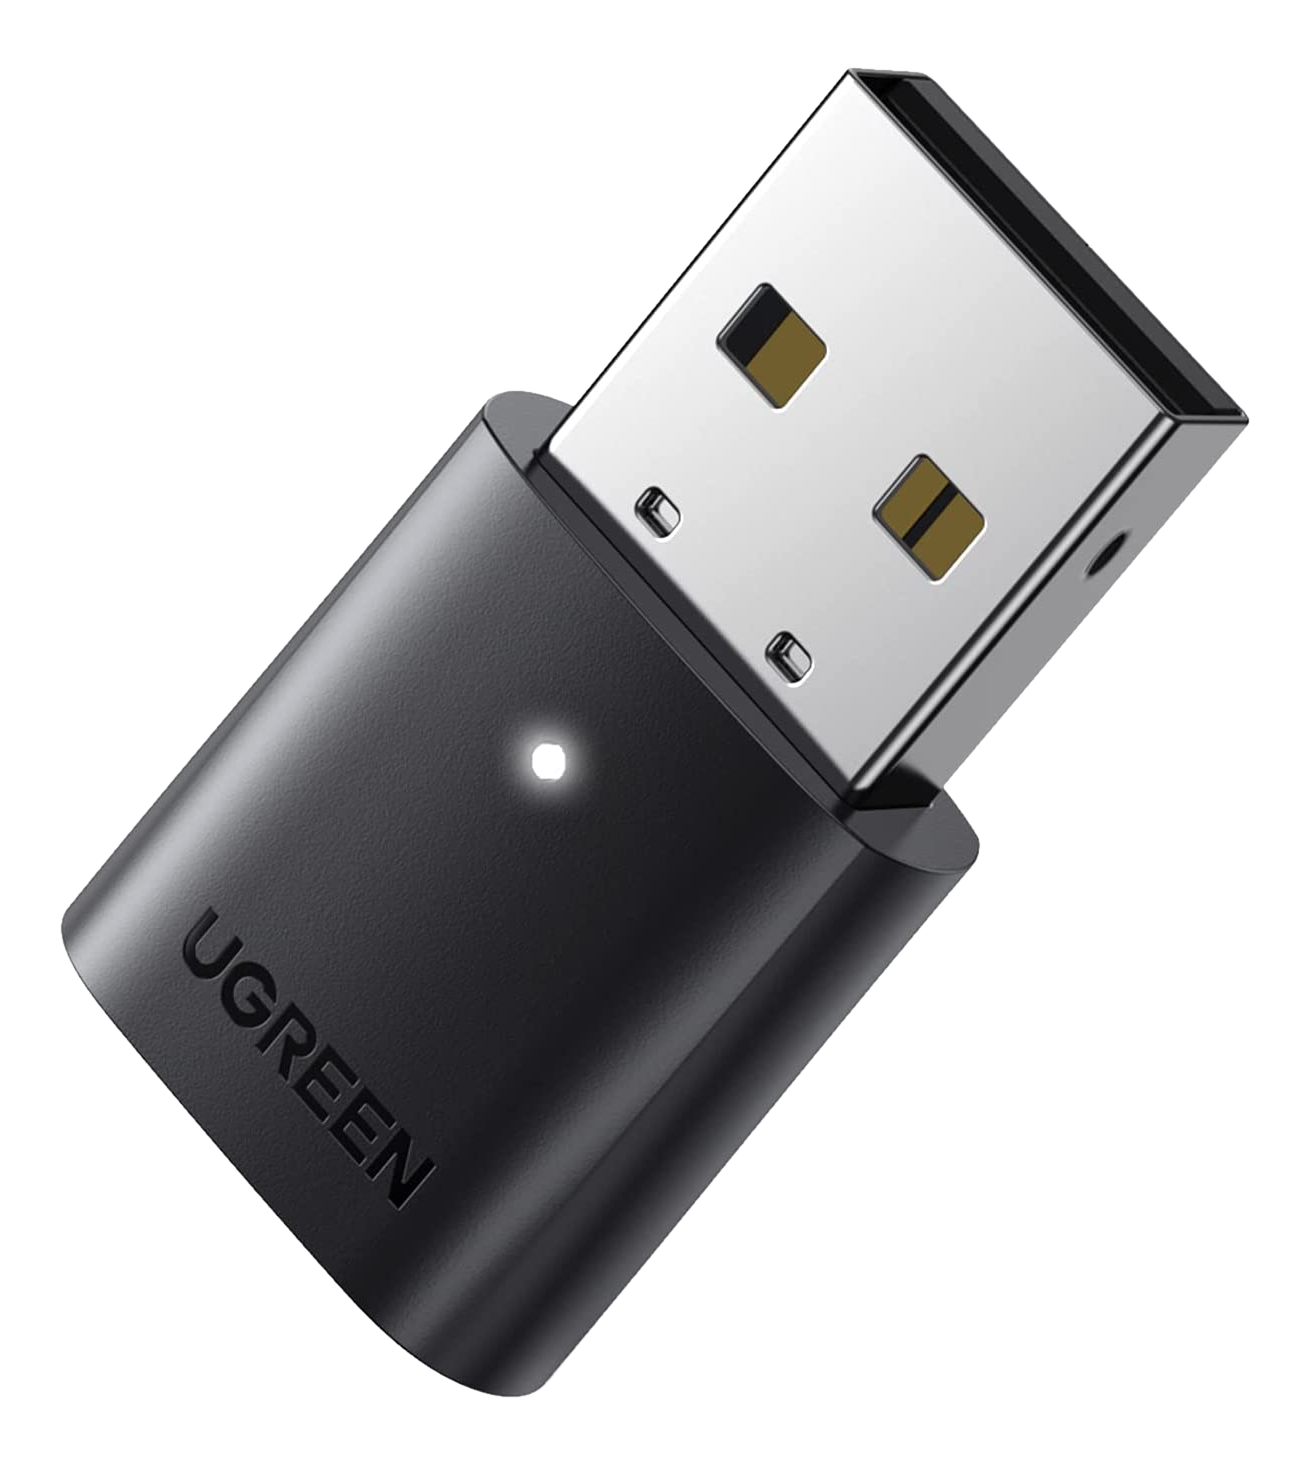 UGREEN 80889 - Adaptateur USB Bluetooth (Noir)